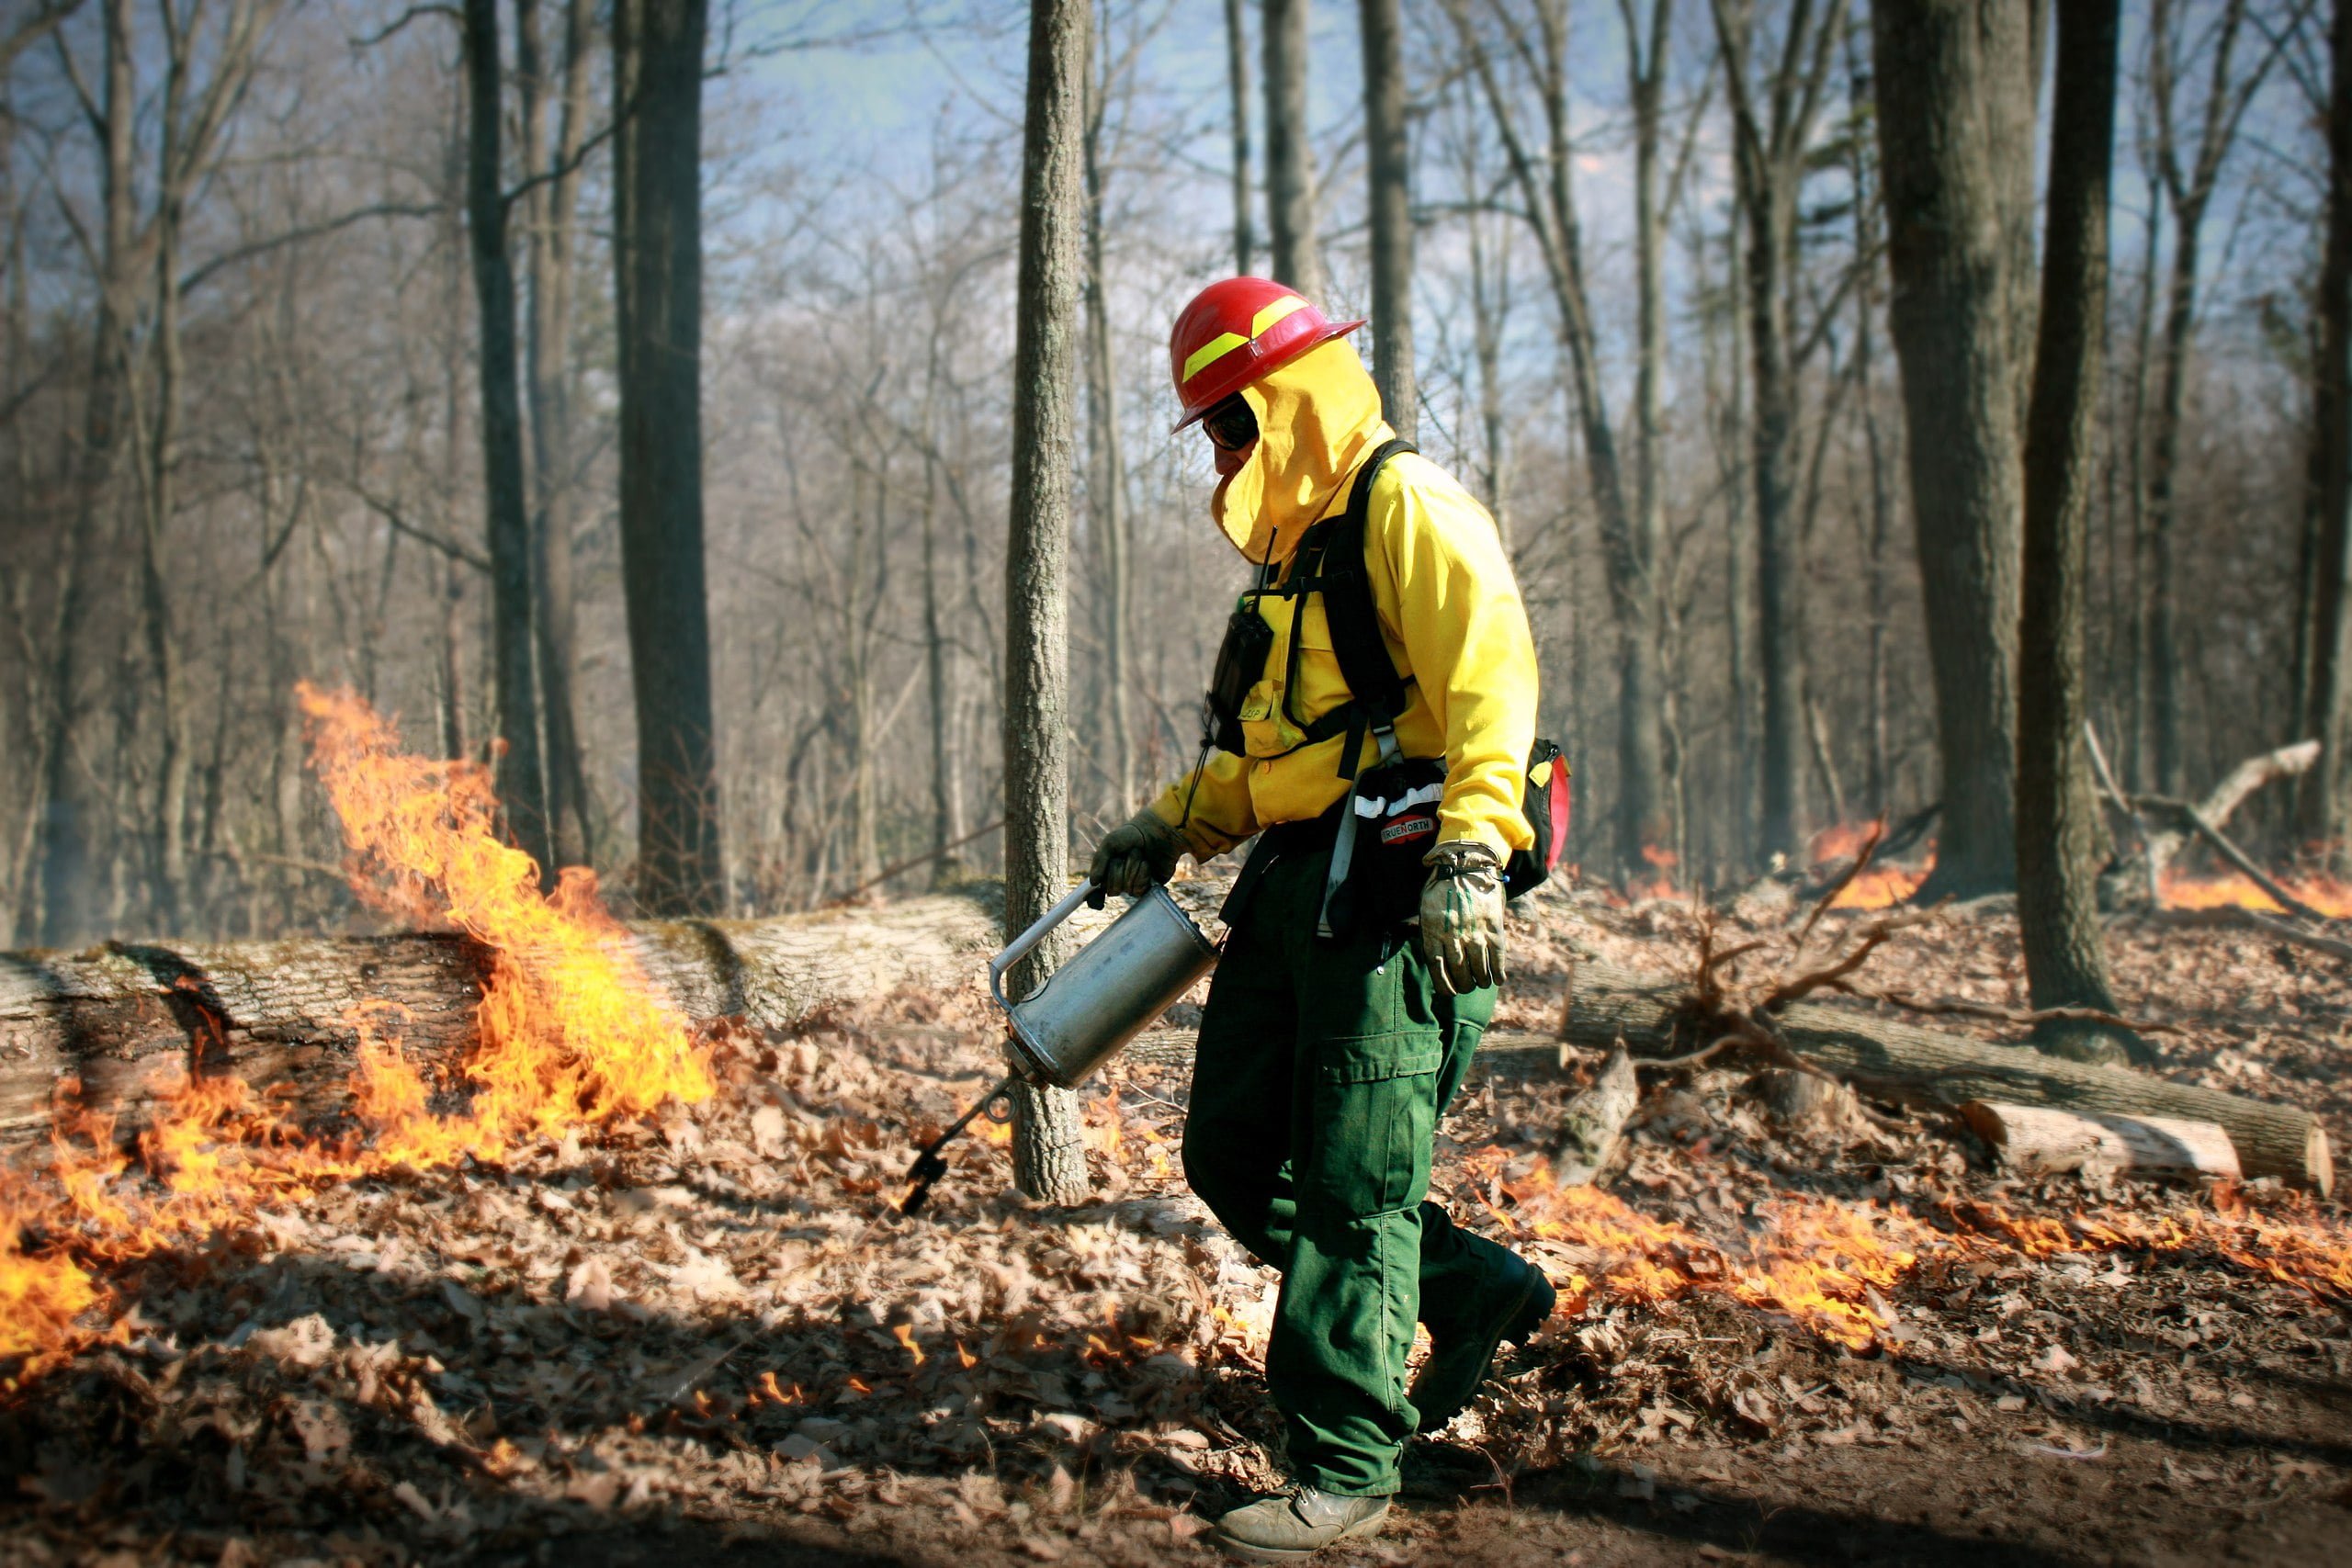 Wyciekły filmy z umyślnych podpaleń lasów? To fake news